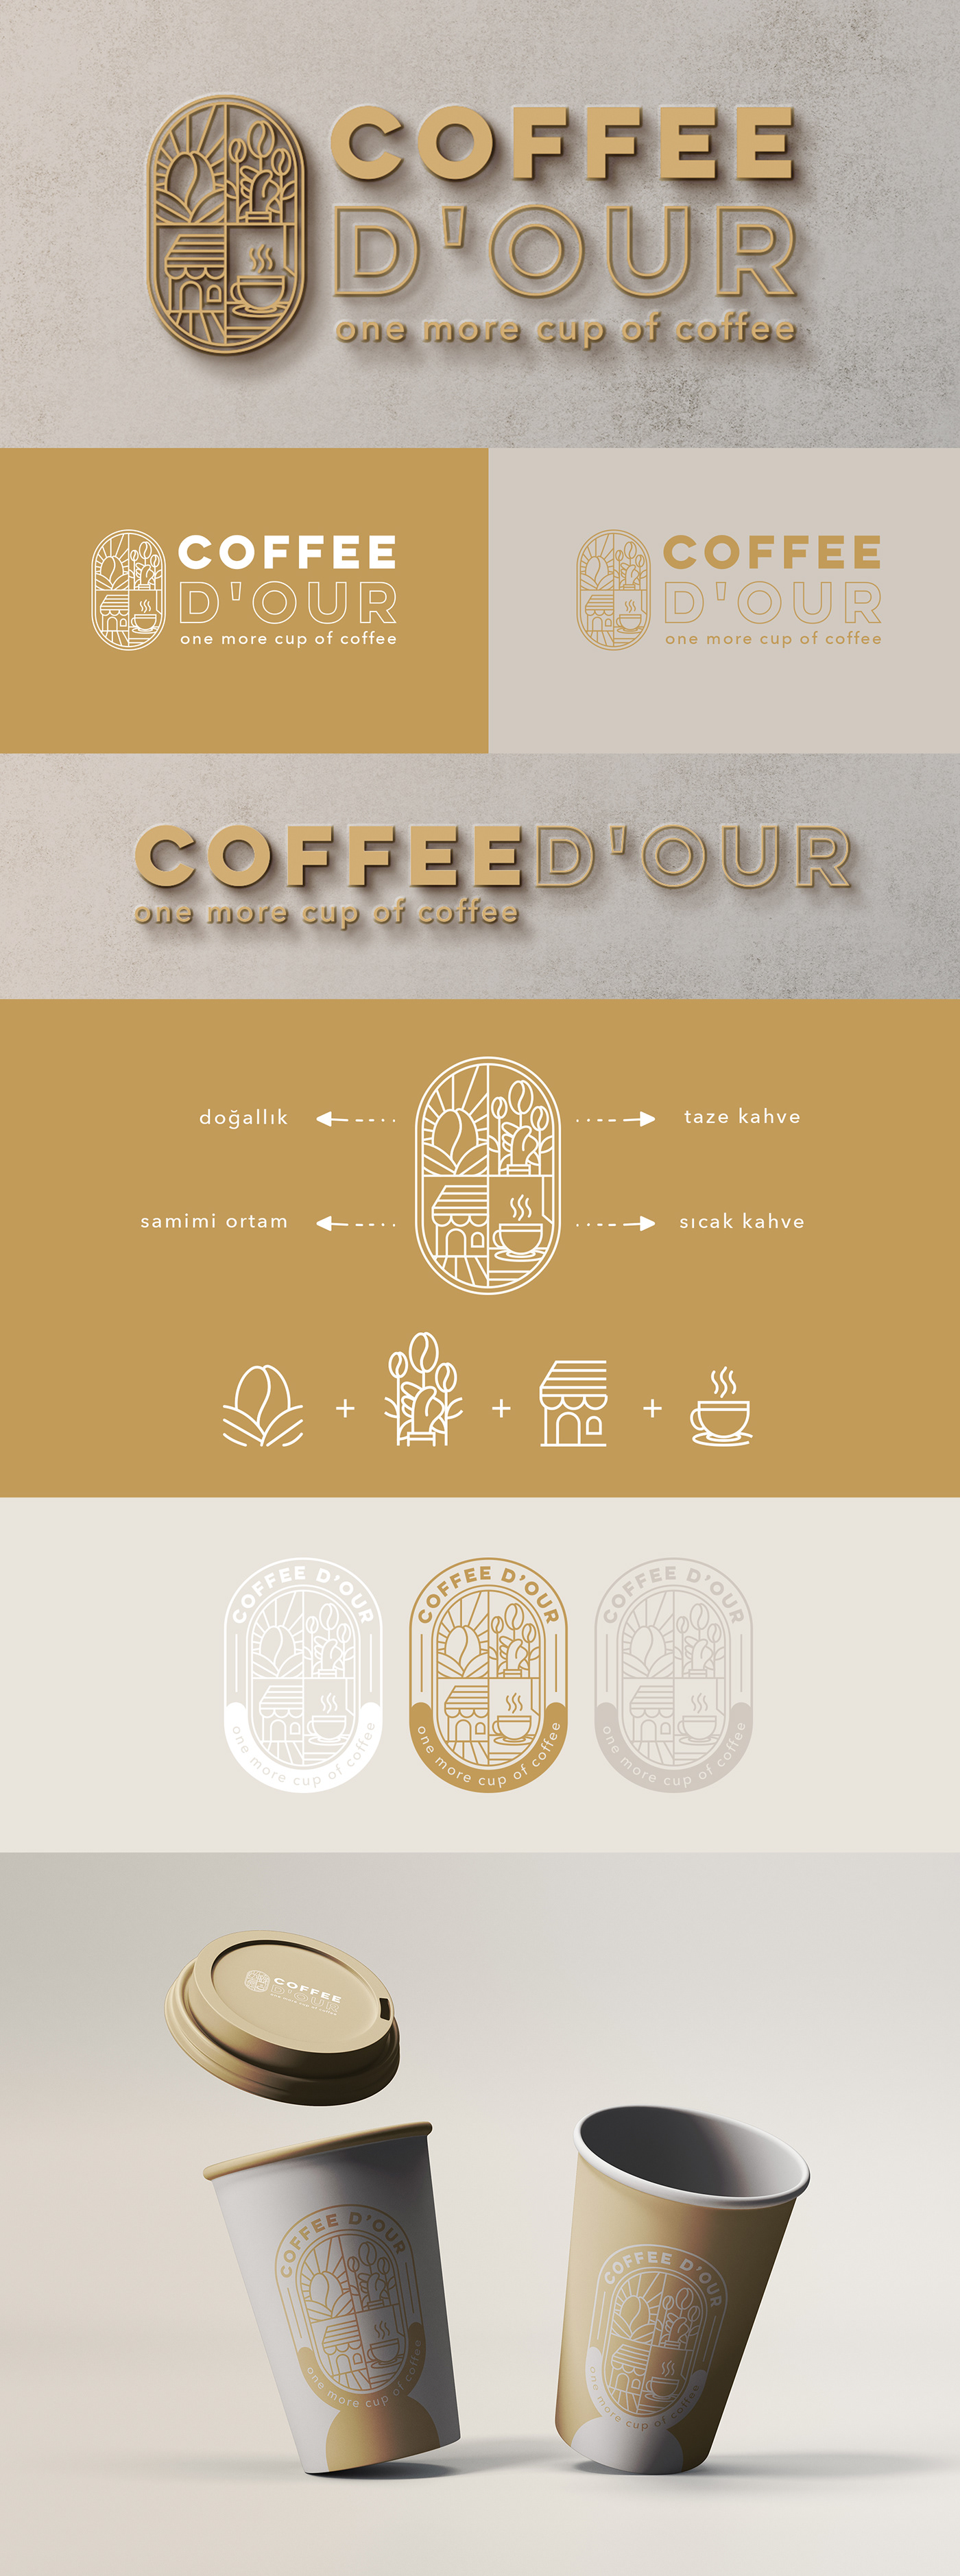 logo Logo Design logos logobrand Logobranding brand identity Branding design Brand Design Coffee coffeelogo